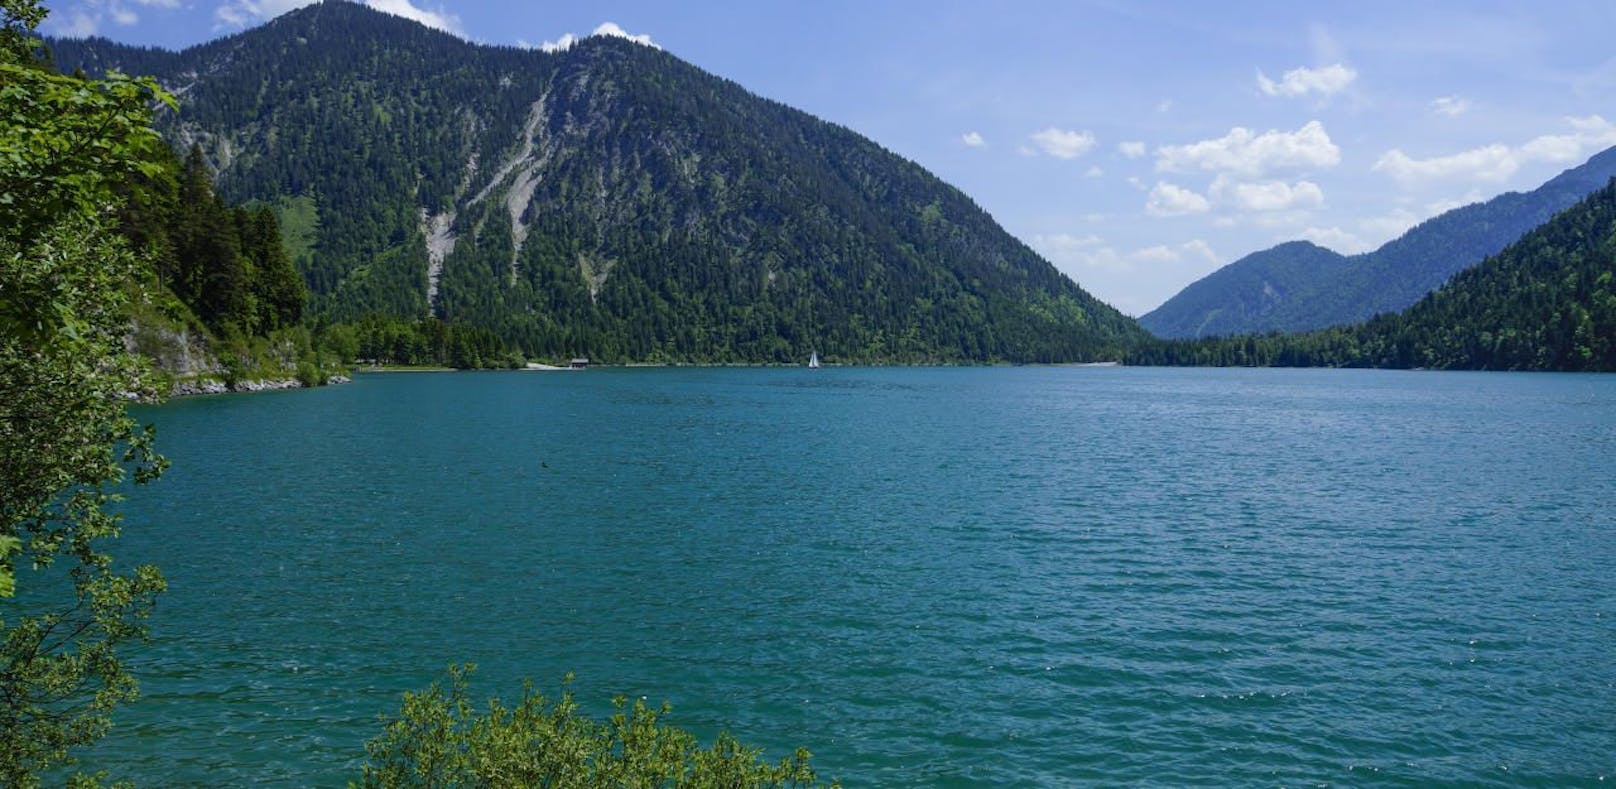 Am Plansee in Tirol wird ein Taucher vermisst. (Symbolfoto)